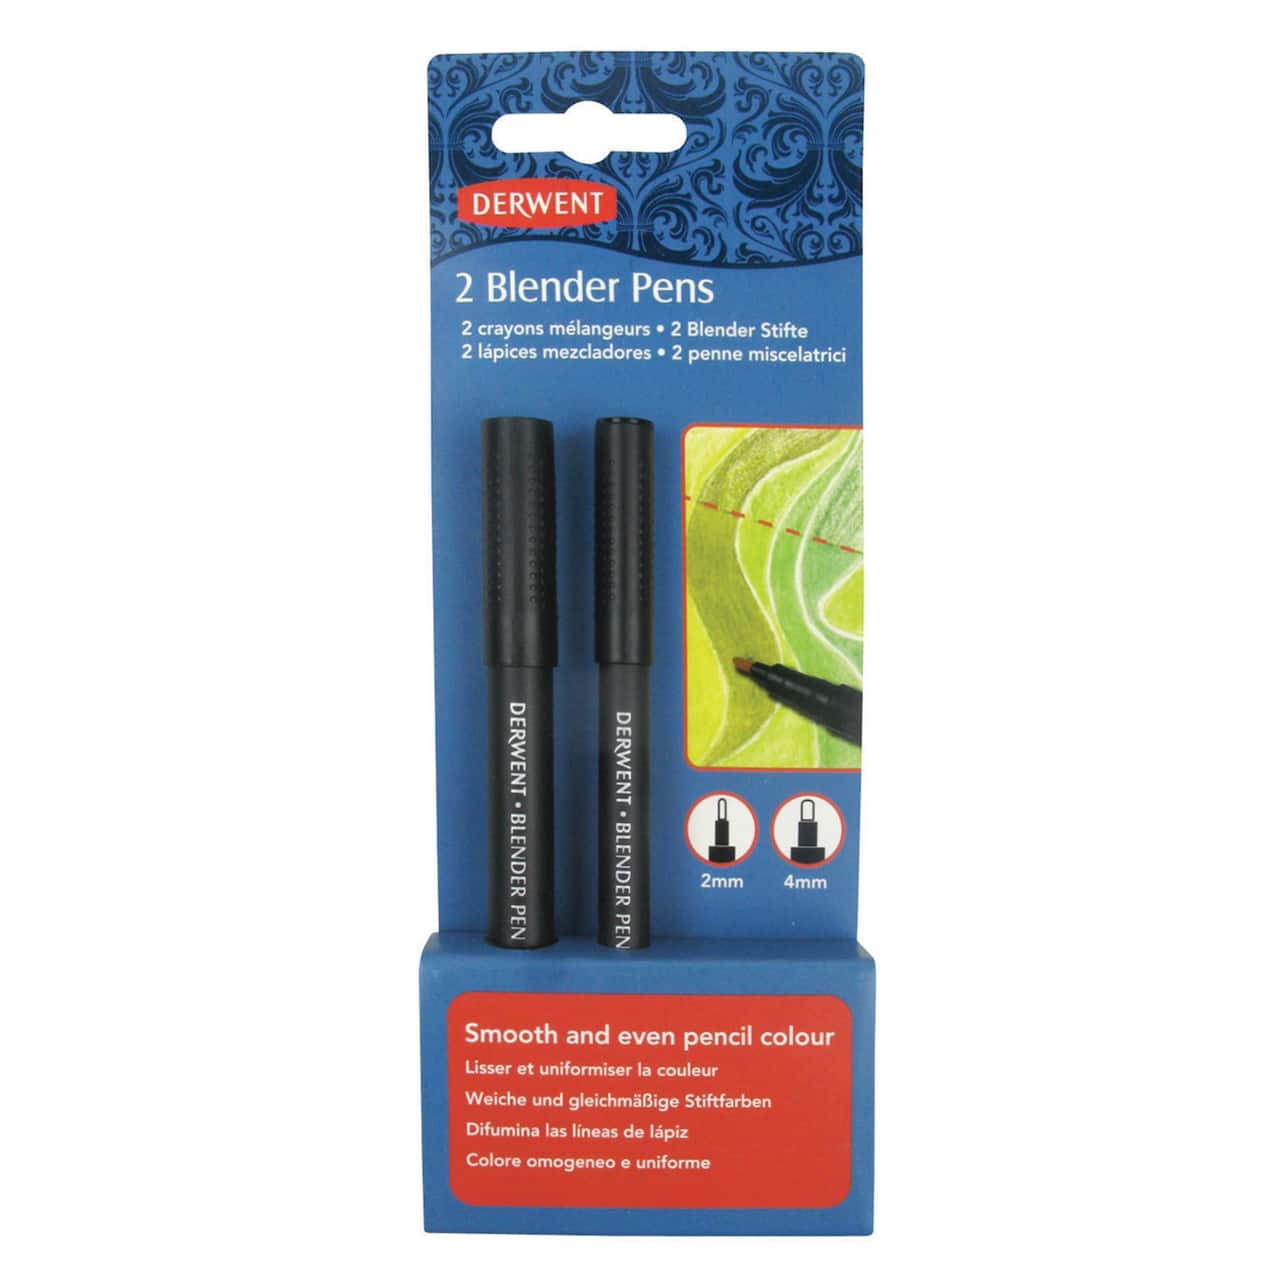 Derwent&#xAE; Blender 2 Pen Set